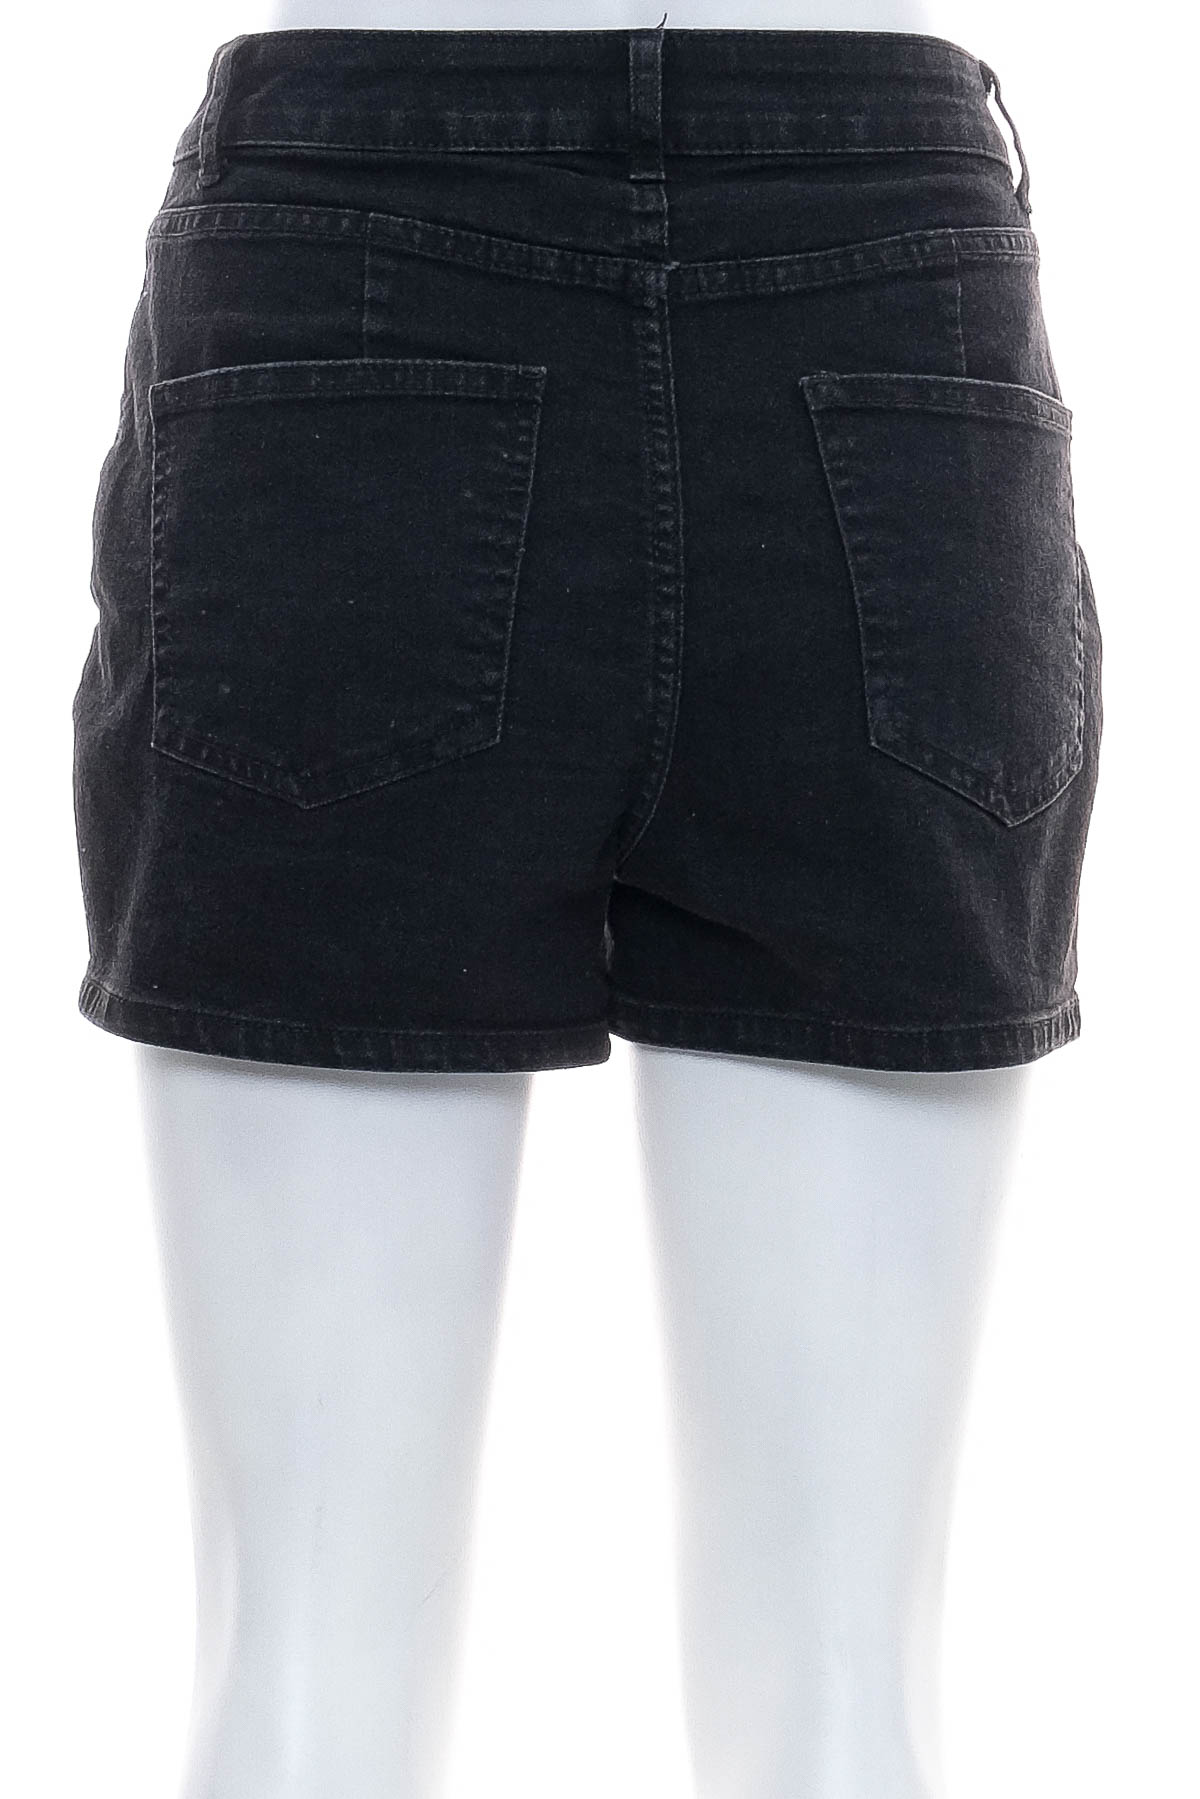 Γυναικείο κοντό παντελόνι - Esmara - 1